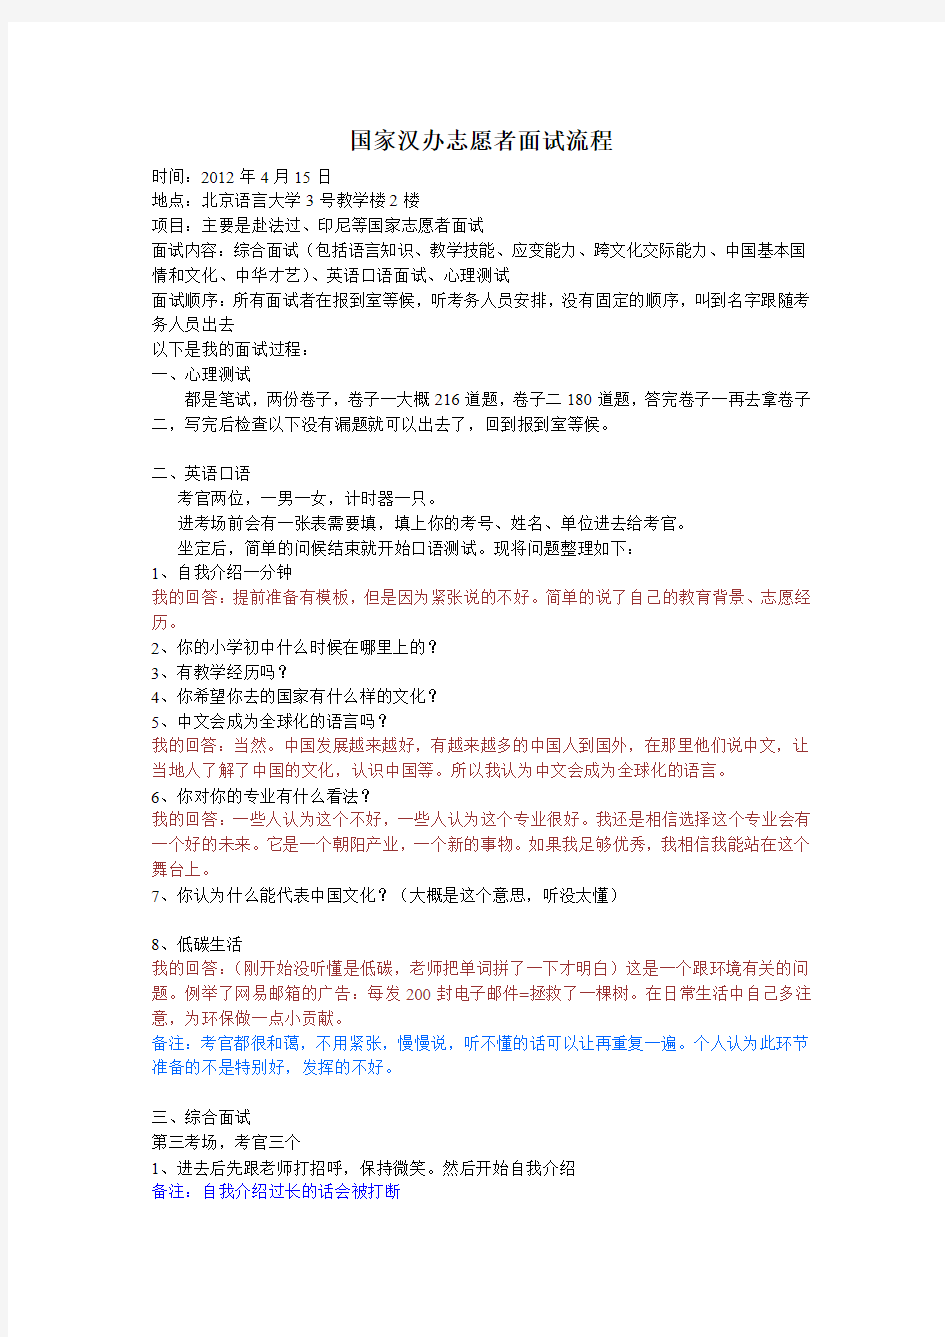 国家汉办志愿者面试流程20120415 - 副本